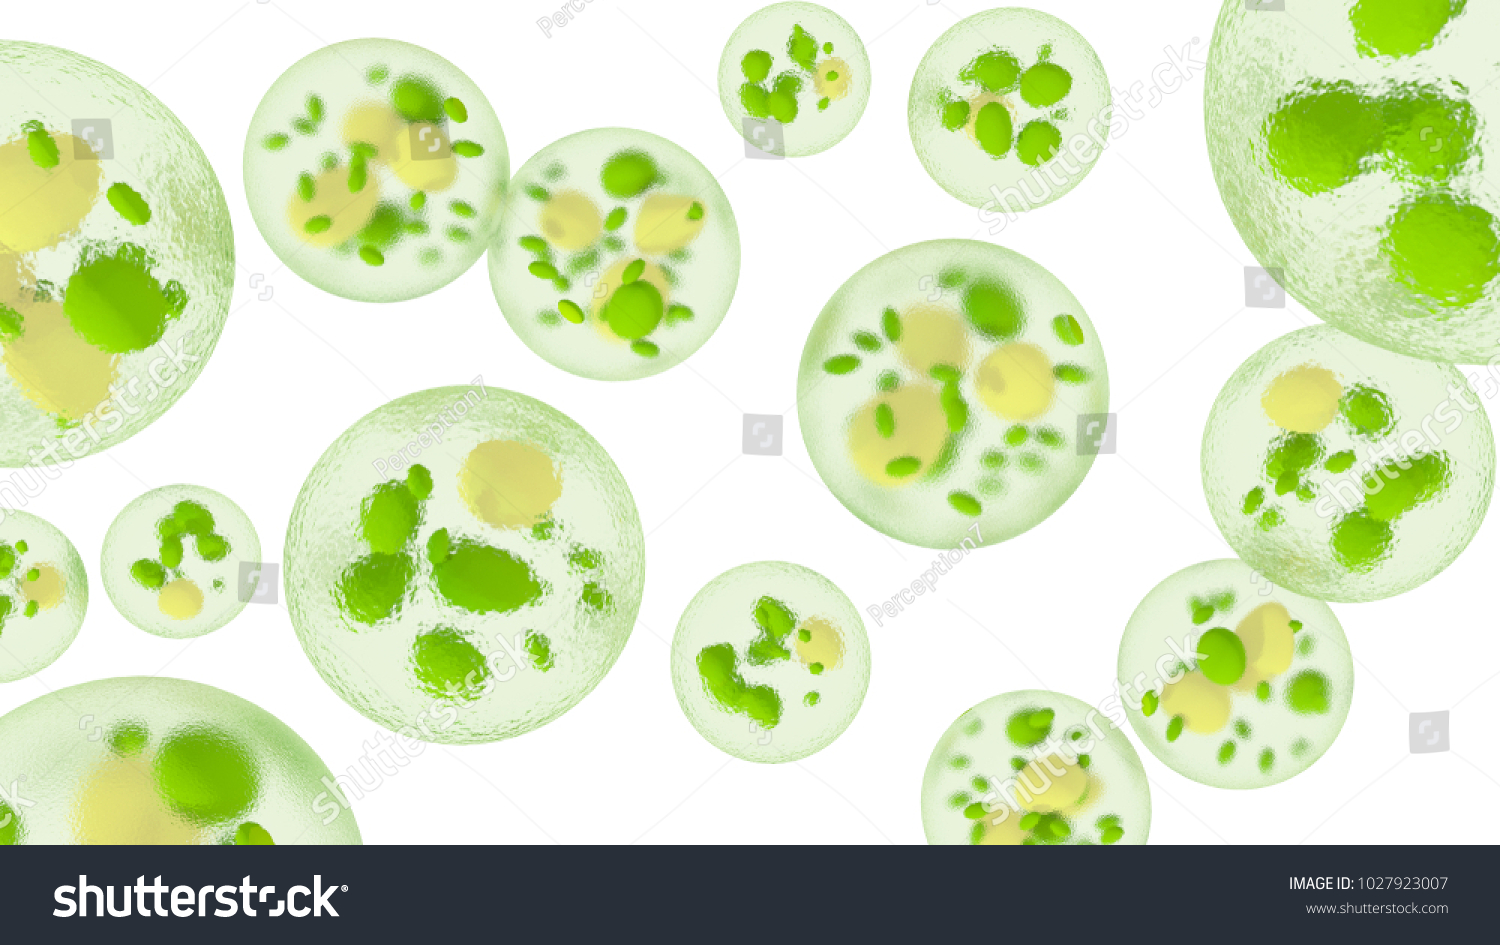 脂質滴を持つ単細胞藻 バイオ燃料の生産 白い背景に顕微鏡下の微細藻類の3dイラスト のイラスト素材